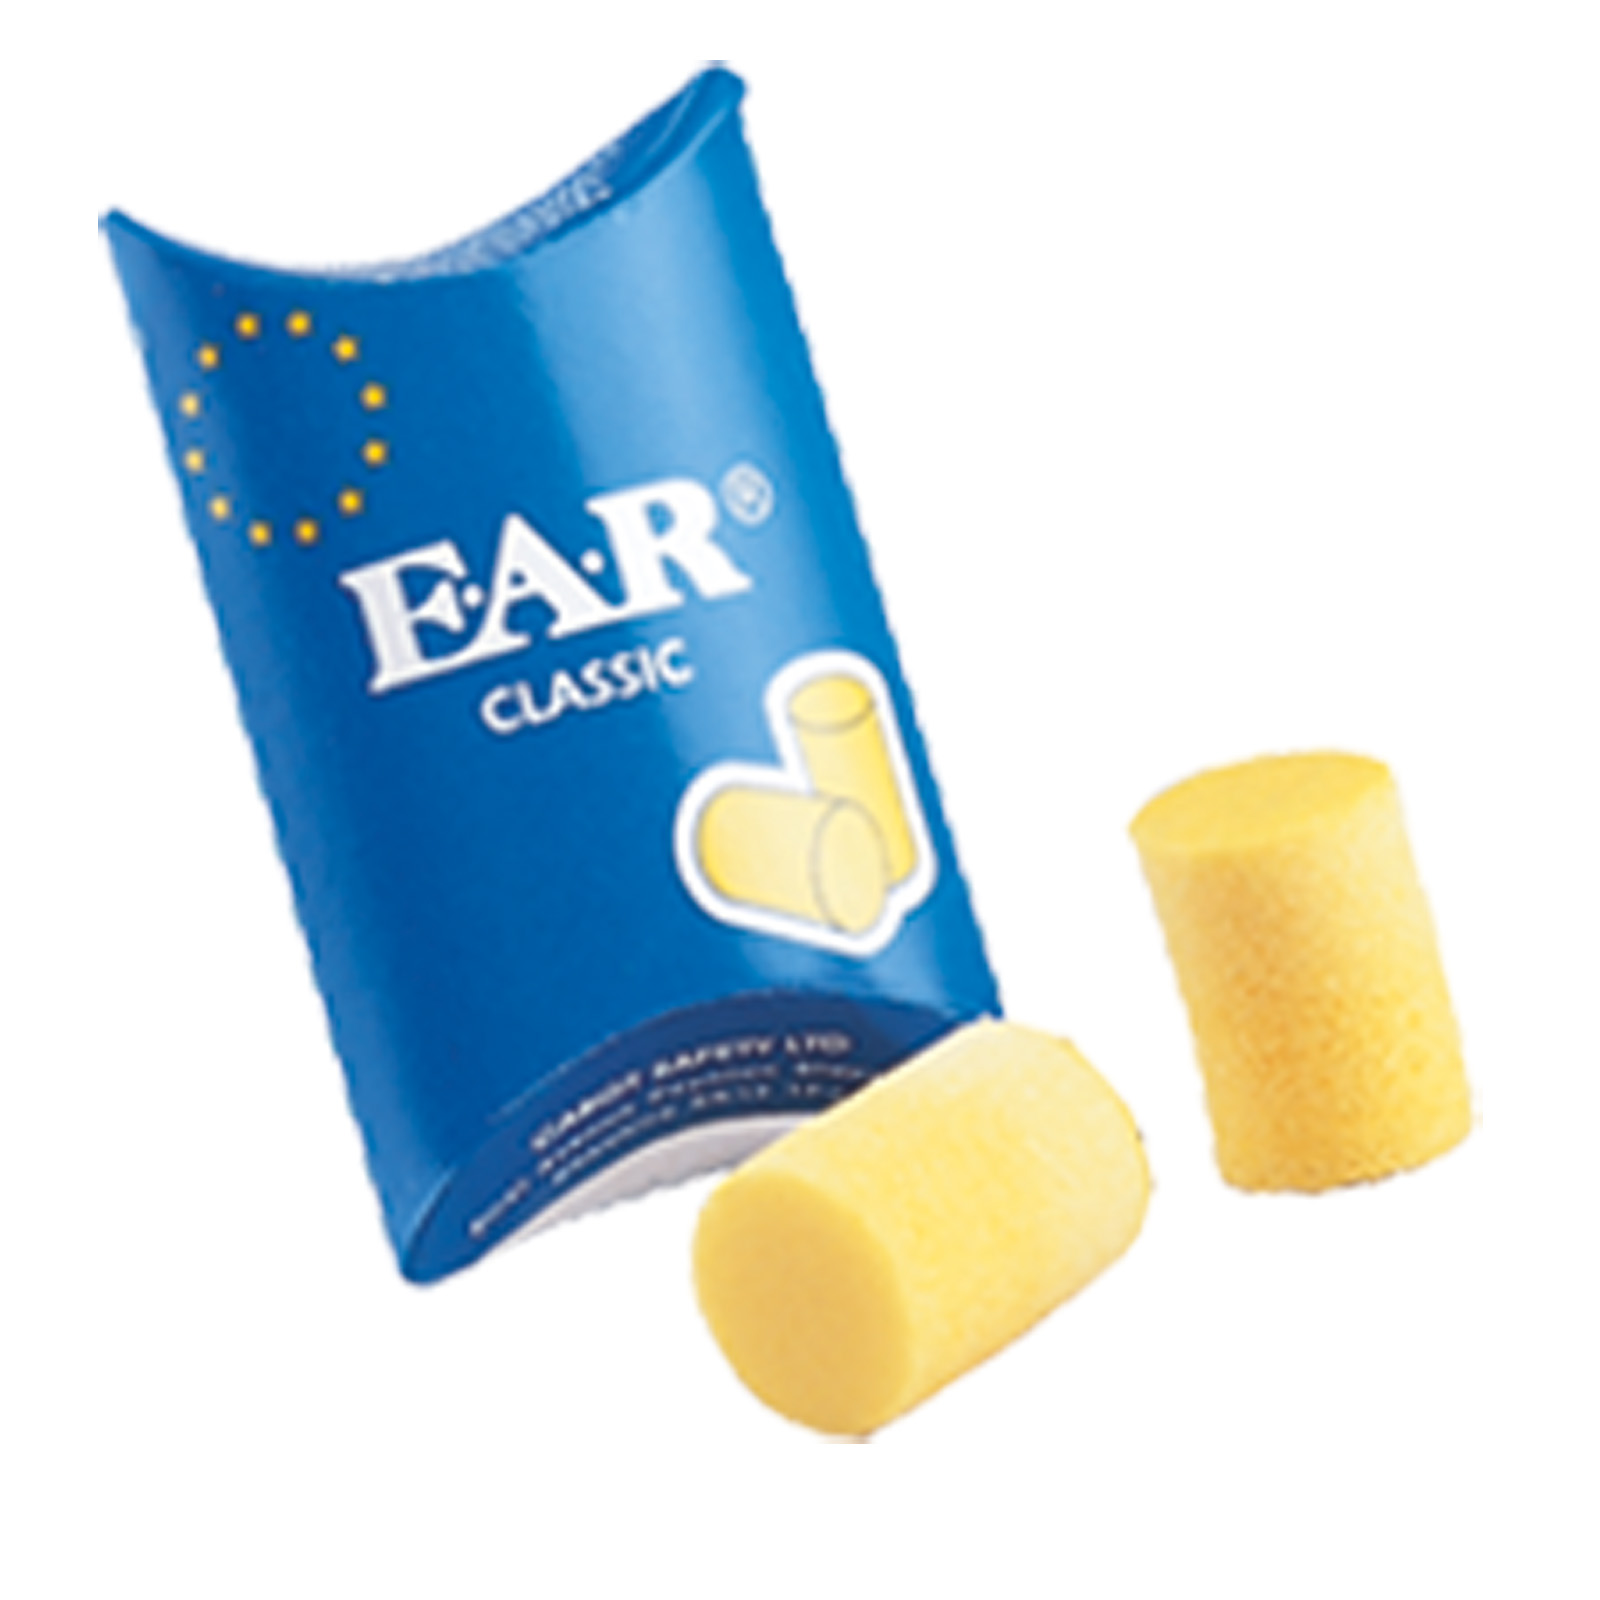 Zátky do uší E.A.R. | soft